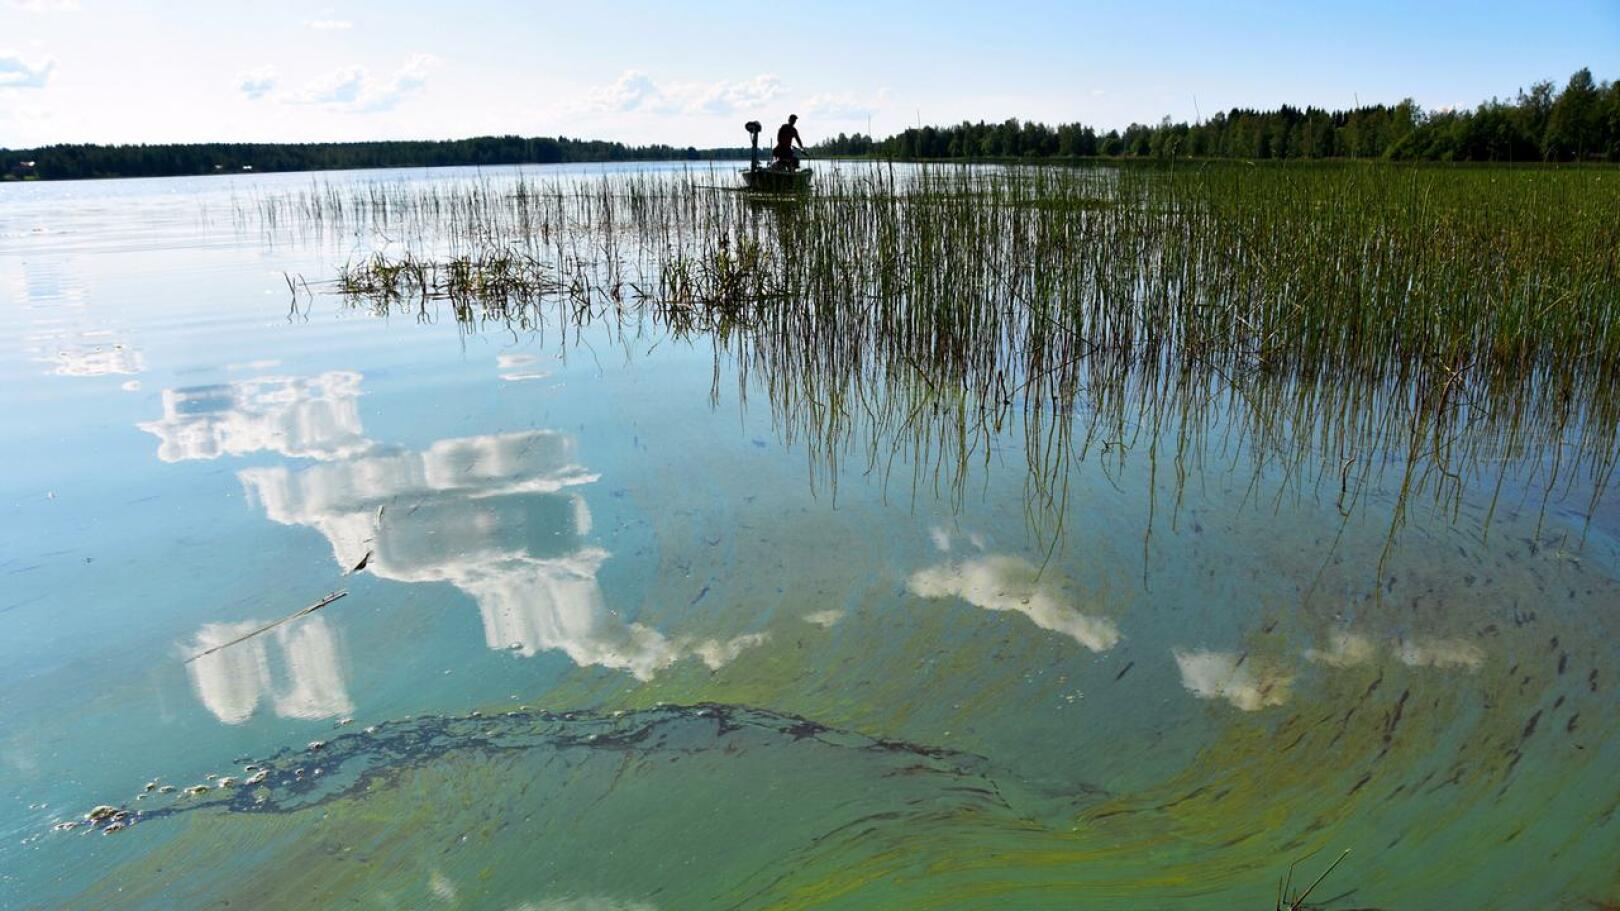 Viime kesänä sinilevätilanne oli molemmilla Vatjusjärvillä paha. Nyt Pienen Vatjusjärven näytteet ovat olleet puhtaita kahden viikon ajan.